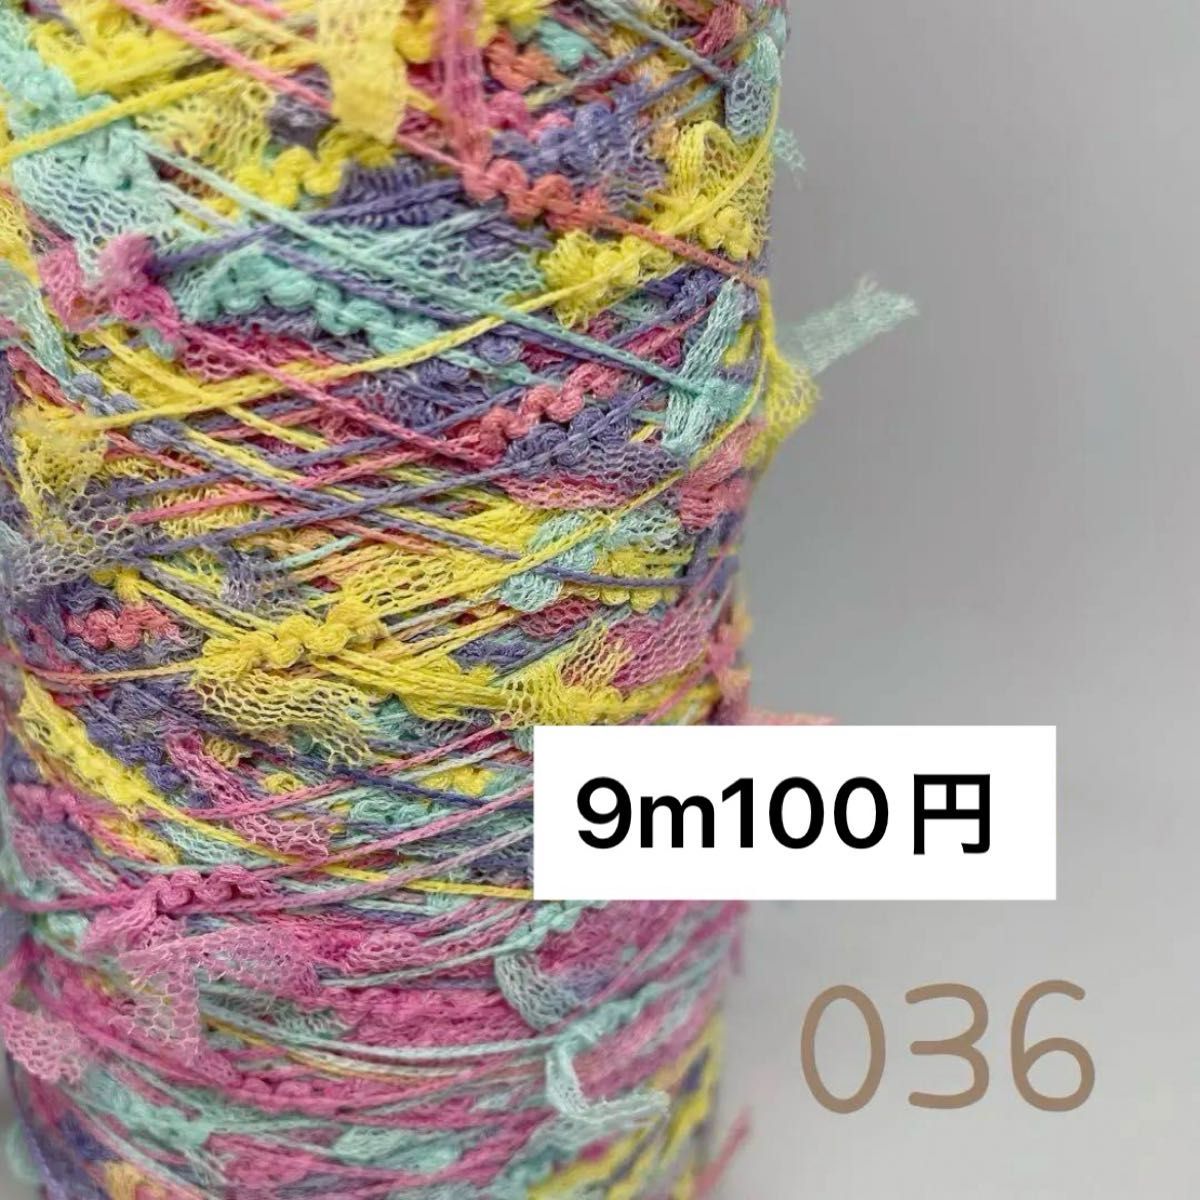 036 素材糸 変わり糸 フラッグネオンカラー 9m 100円 送料200円